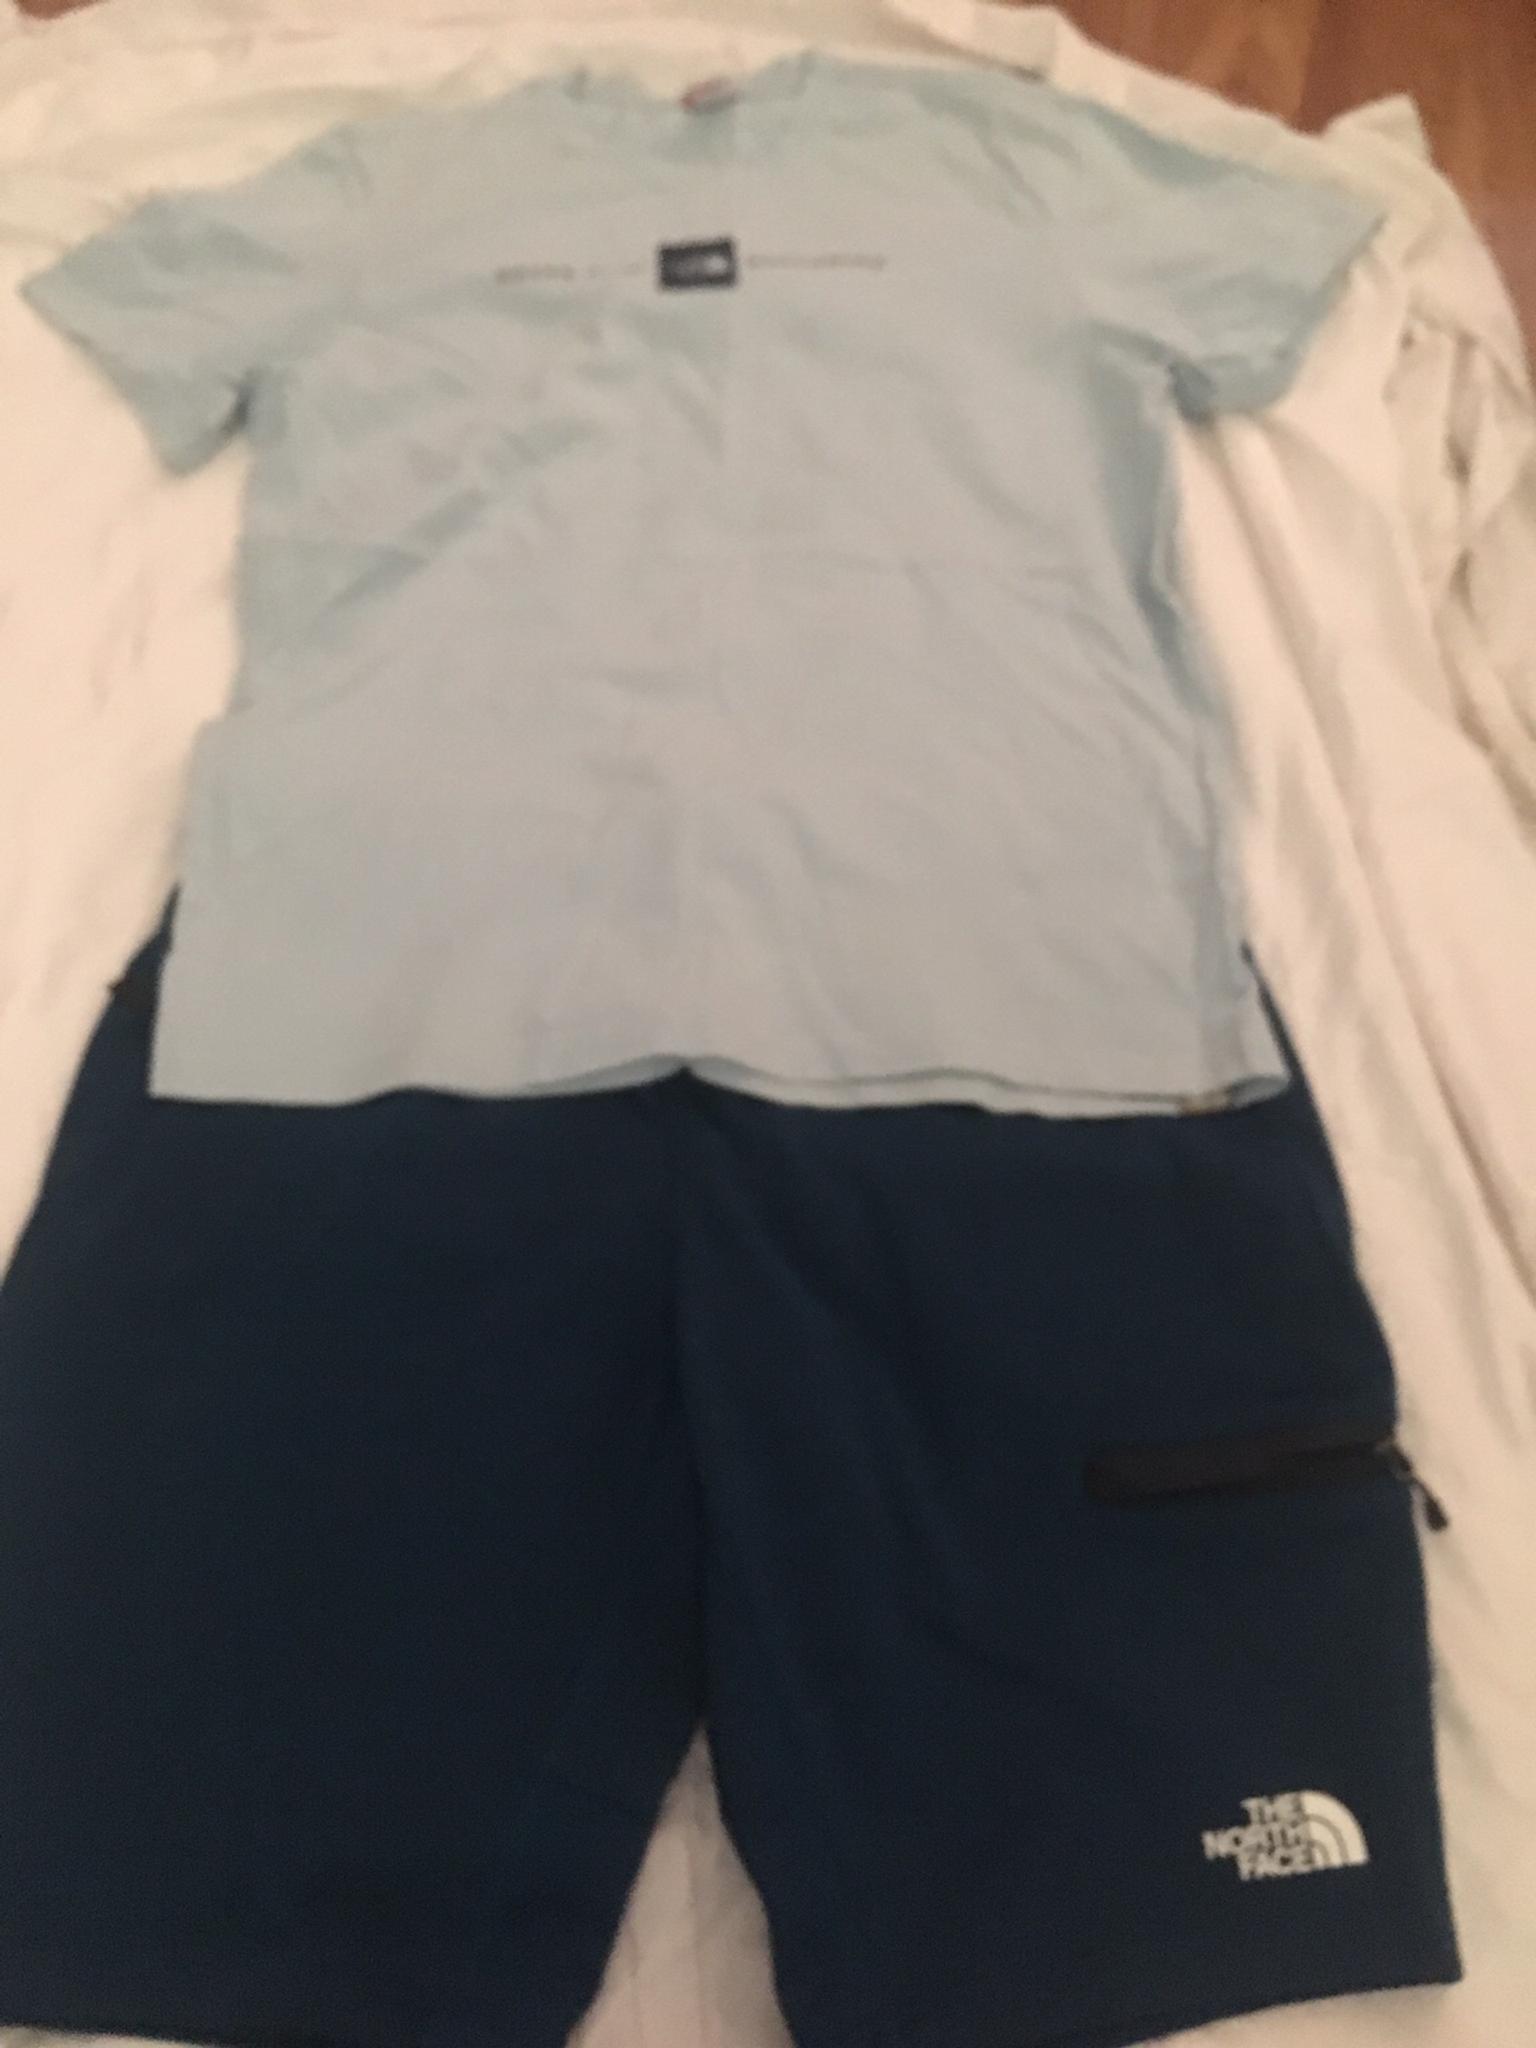 north face shorts and shirt set